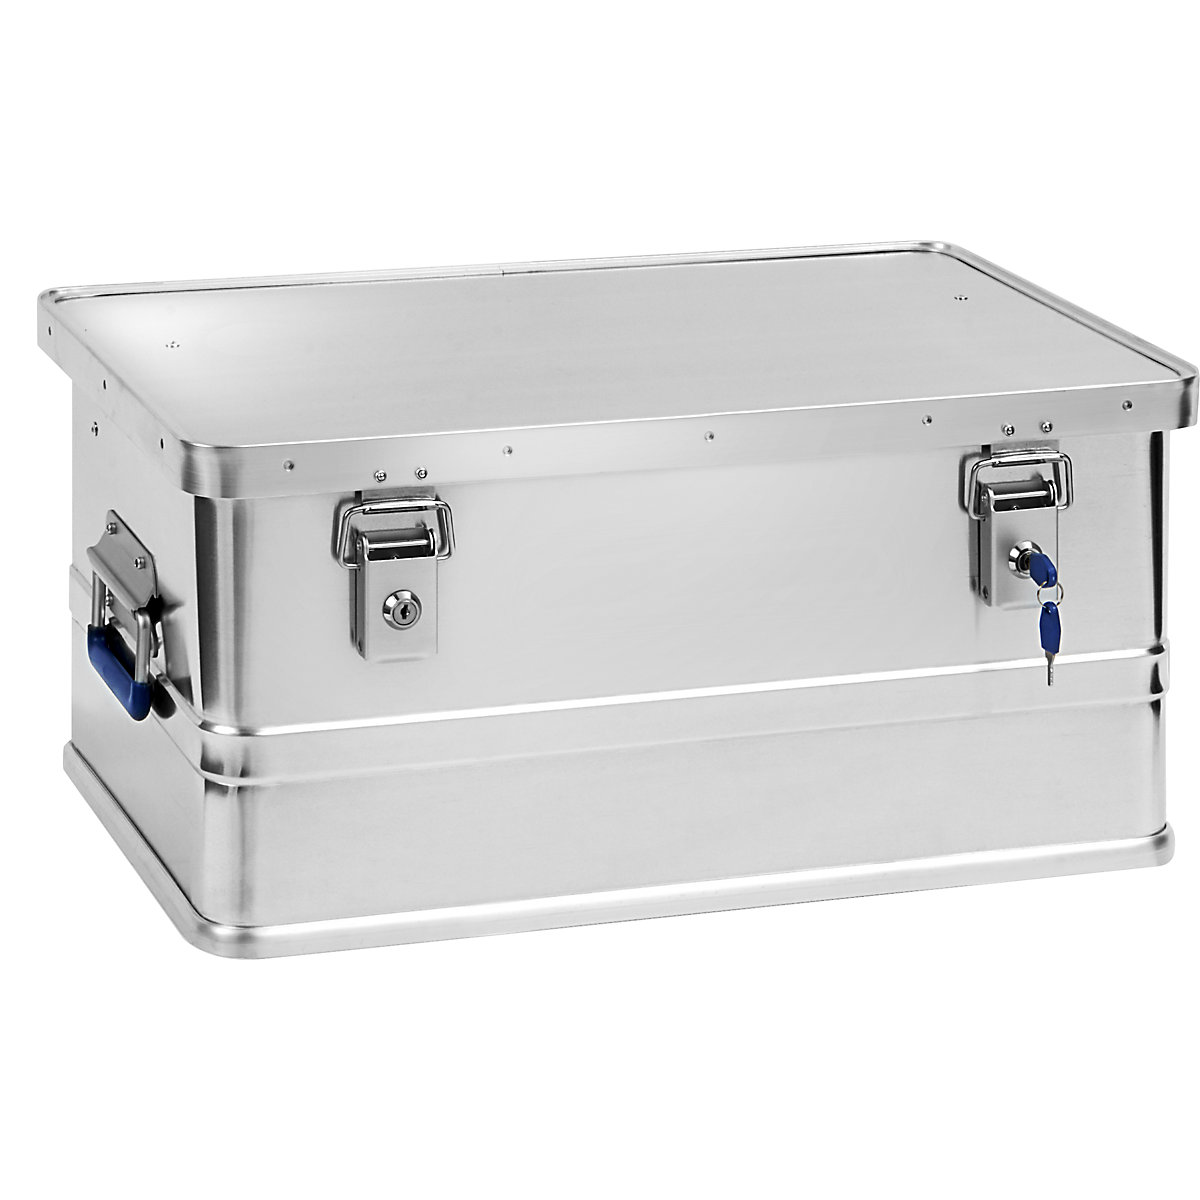 Caja de aluminio - Cajas de aluminio - Cajas - Equipamiento de taller -  Catálogo